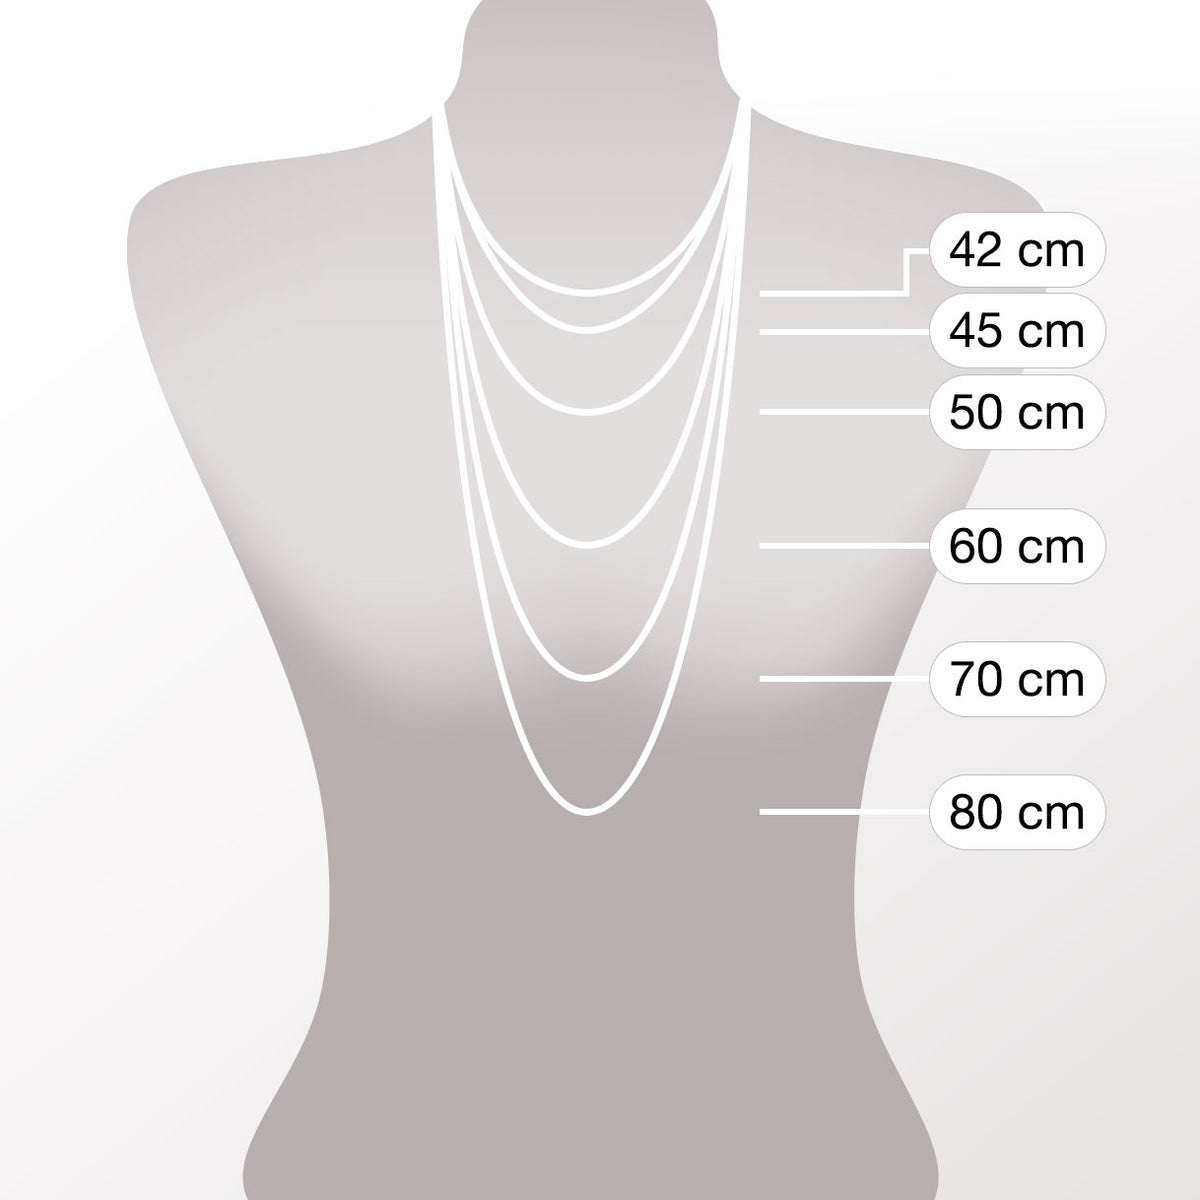 Halskette 70cm Licia CIAO mit persönlicher Gravur